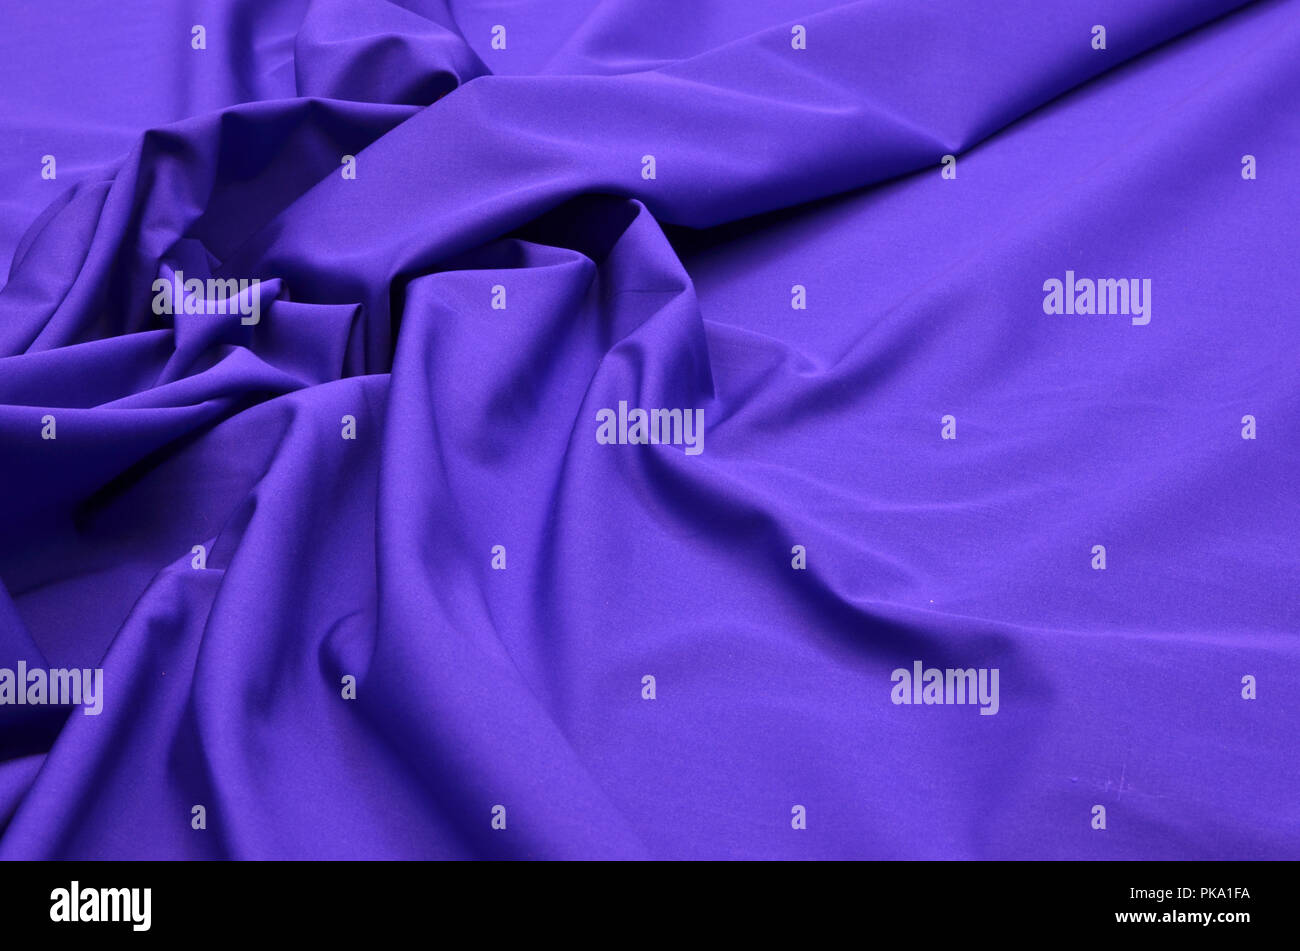 Cotton shirt, cornflower blue color Stock Photo - Alamy